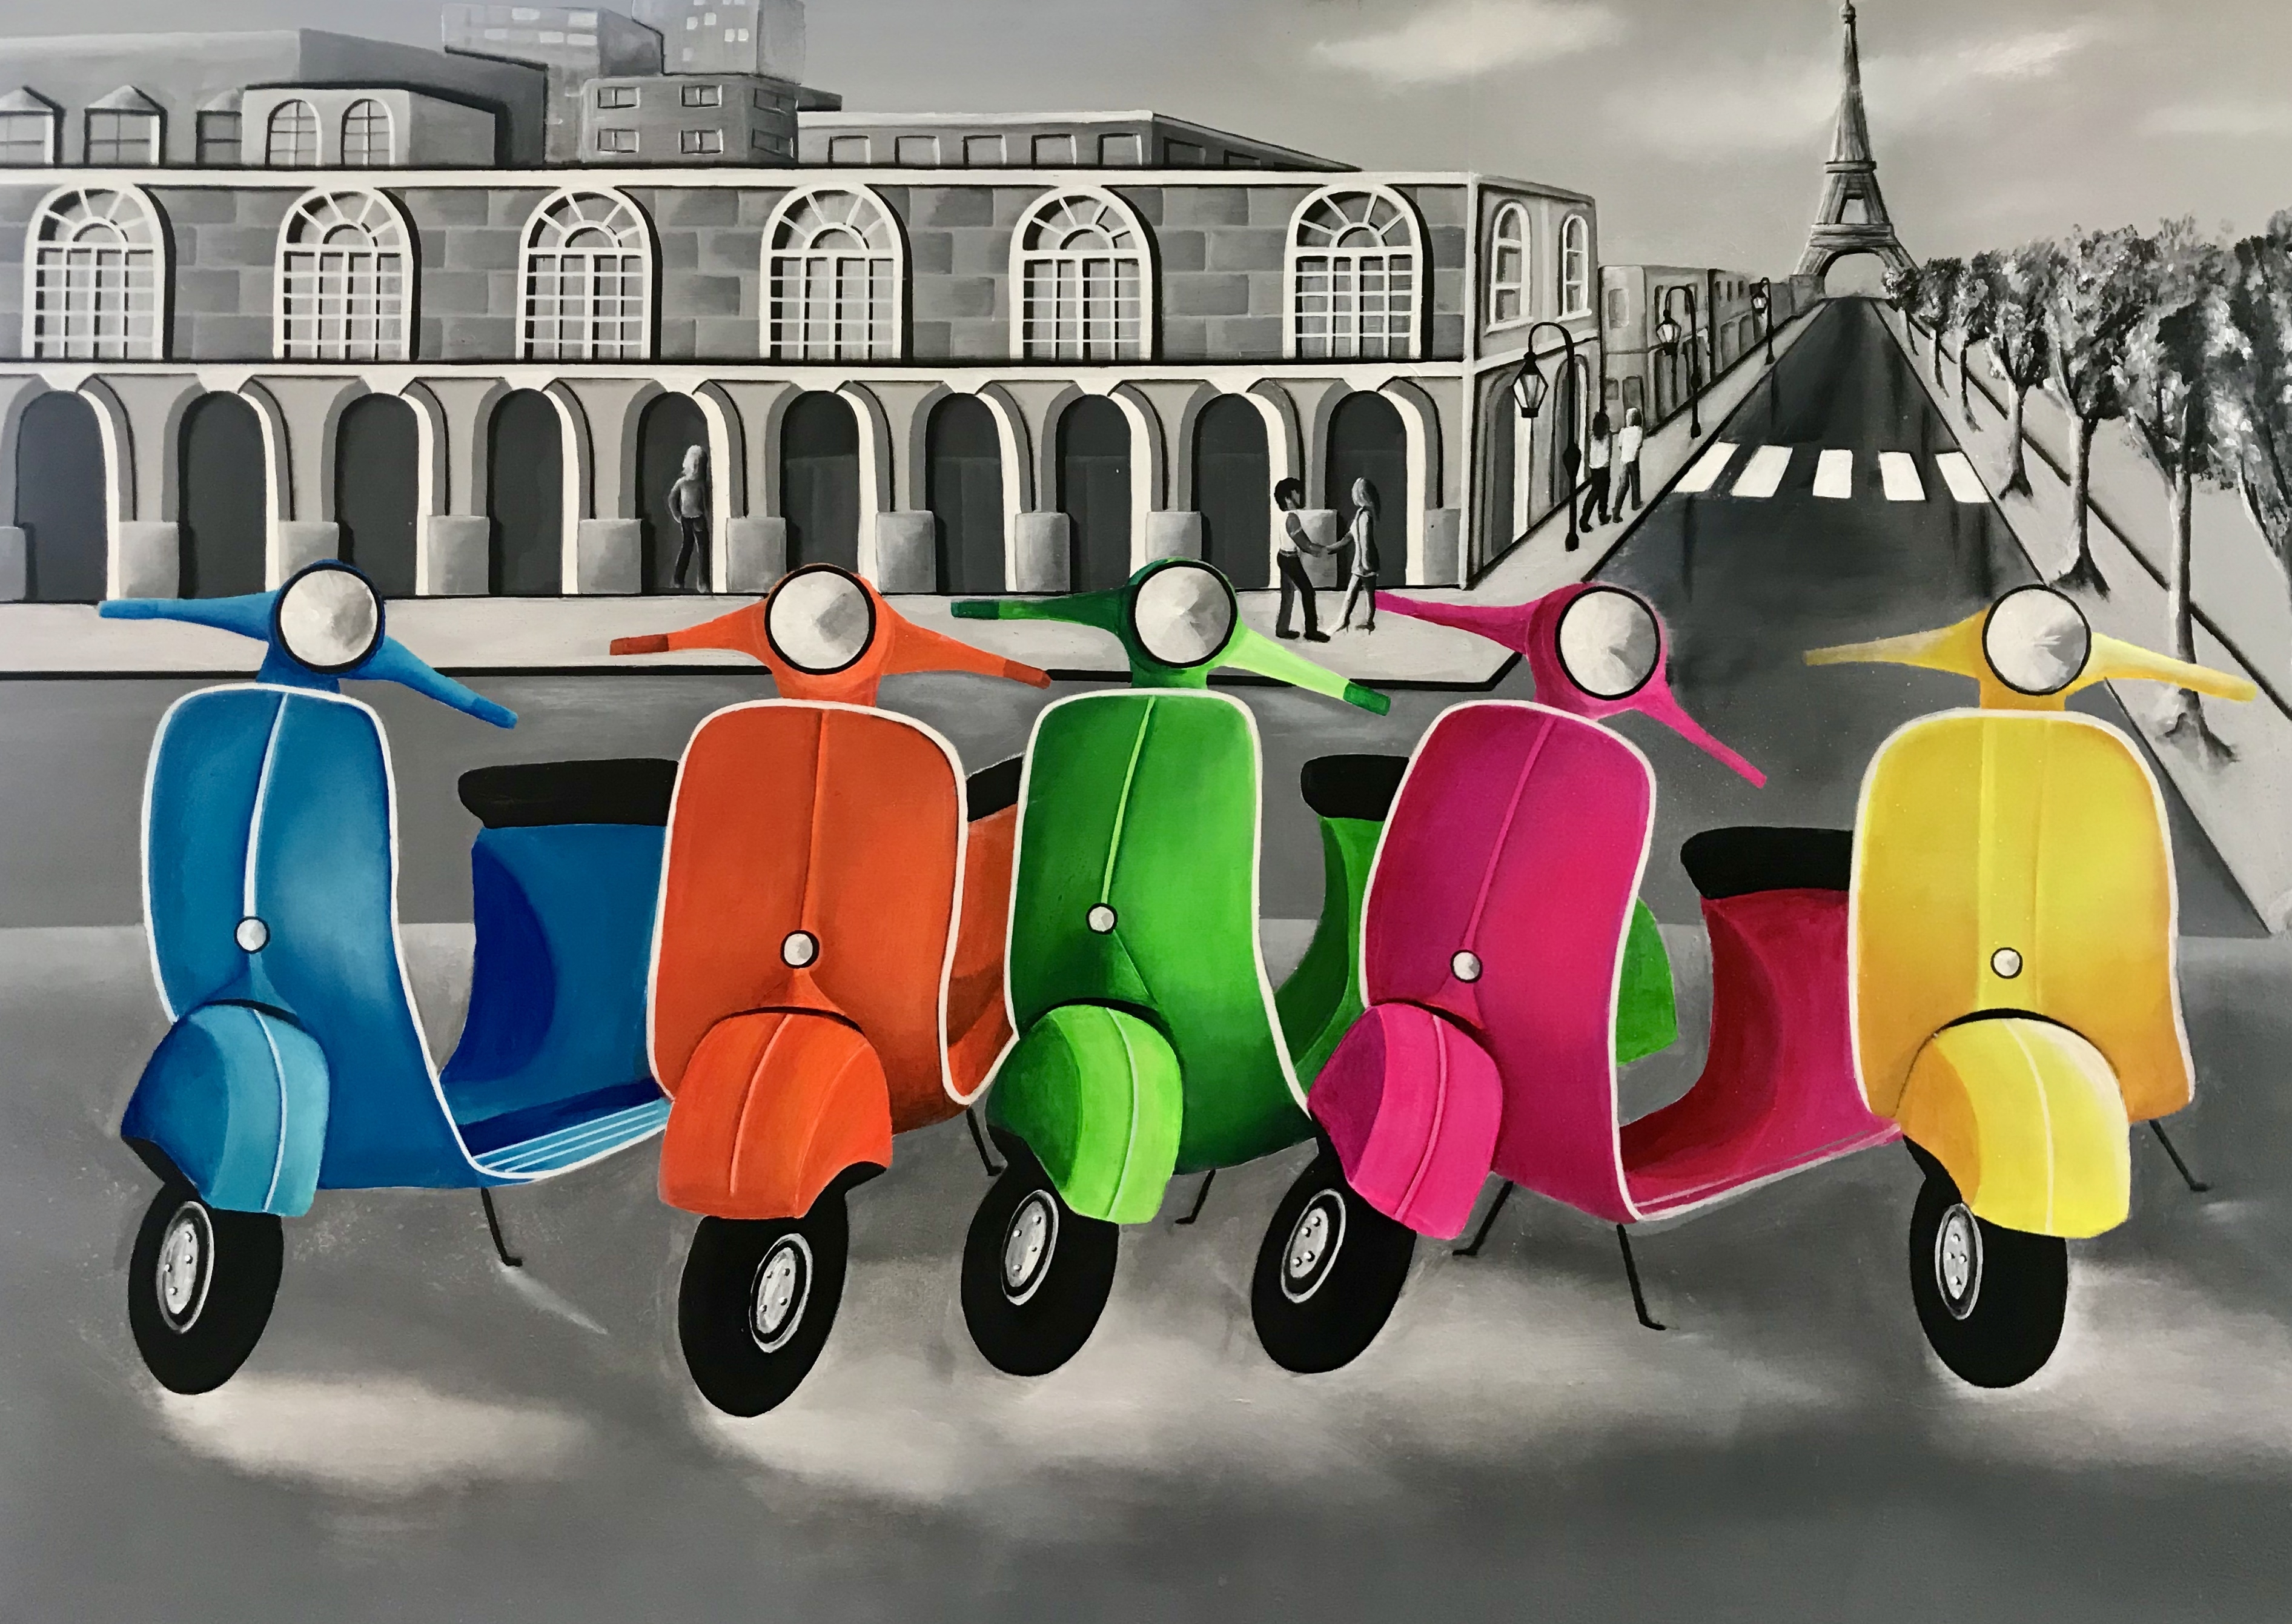 Les scooters de Paris - Safia Bollini